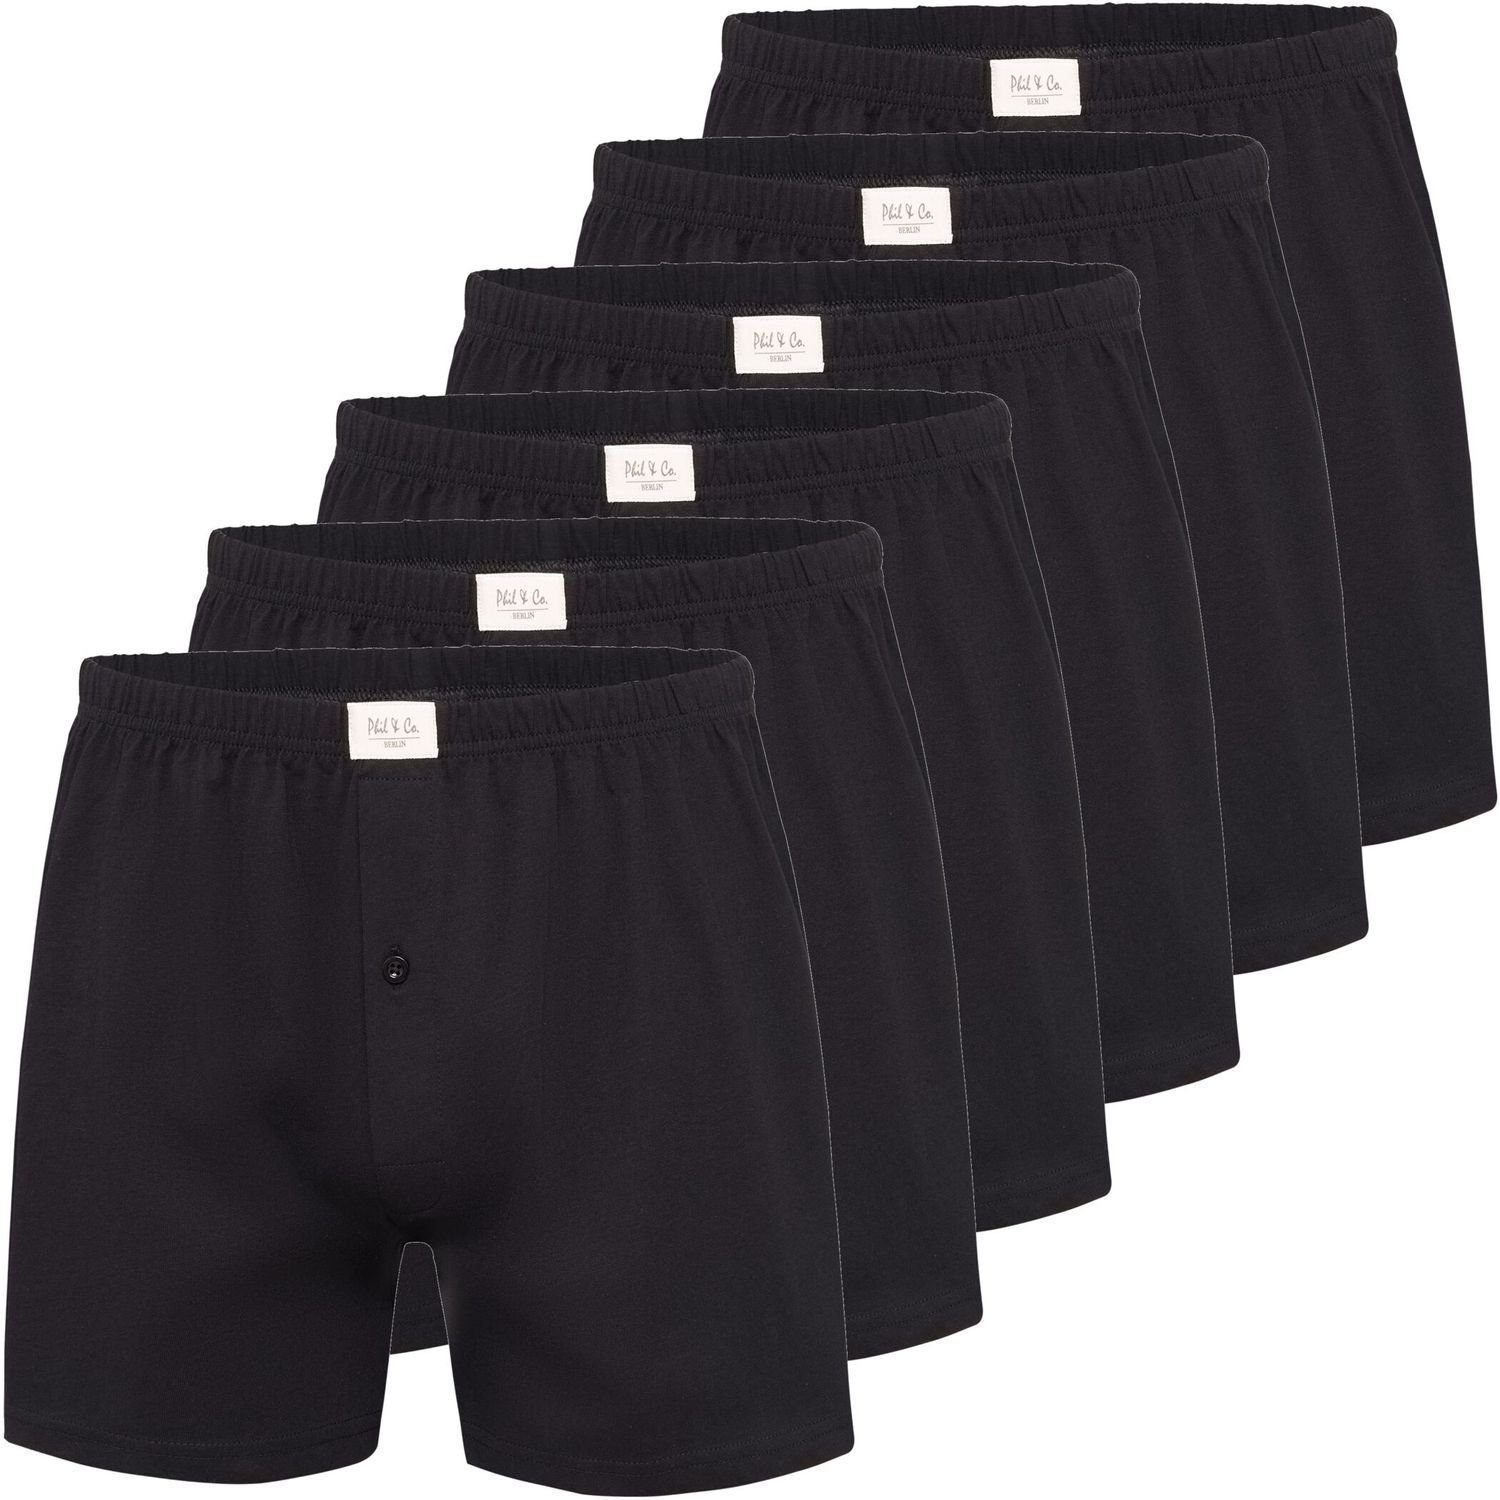 Phil & Co. Boxershorts 6, 9 oder 12 Stück Phil & Co Herren Jersey Shorts Pants große Größen (6-St) schwarz